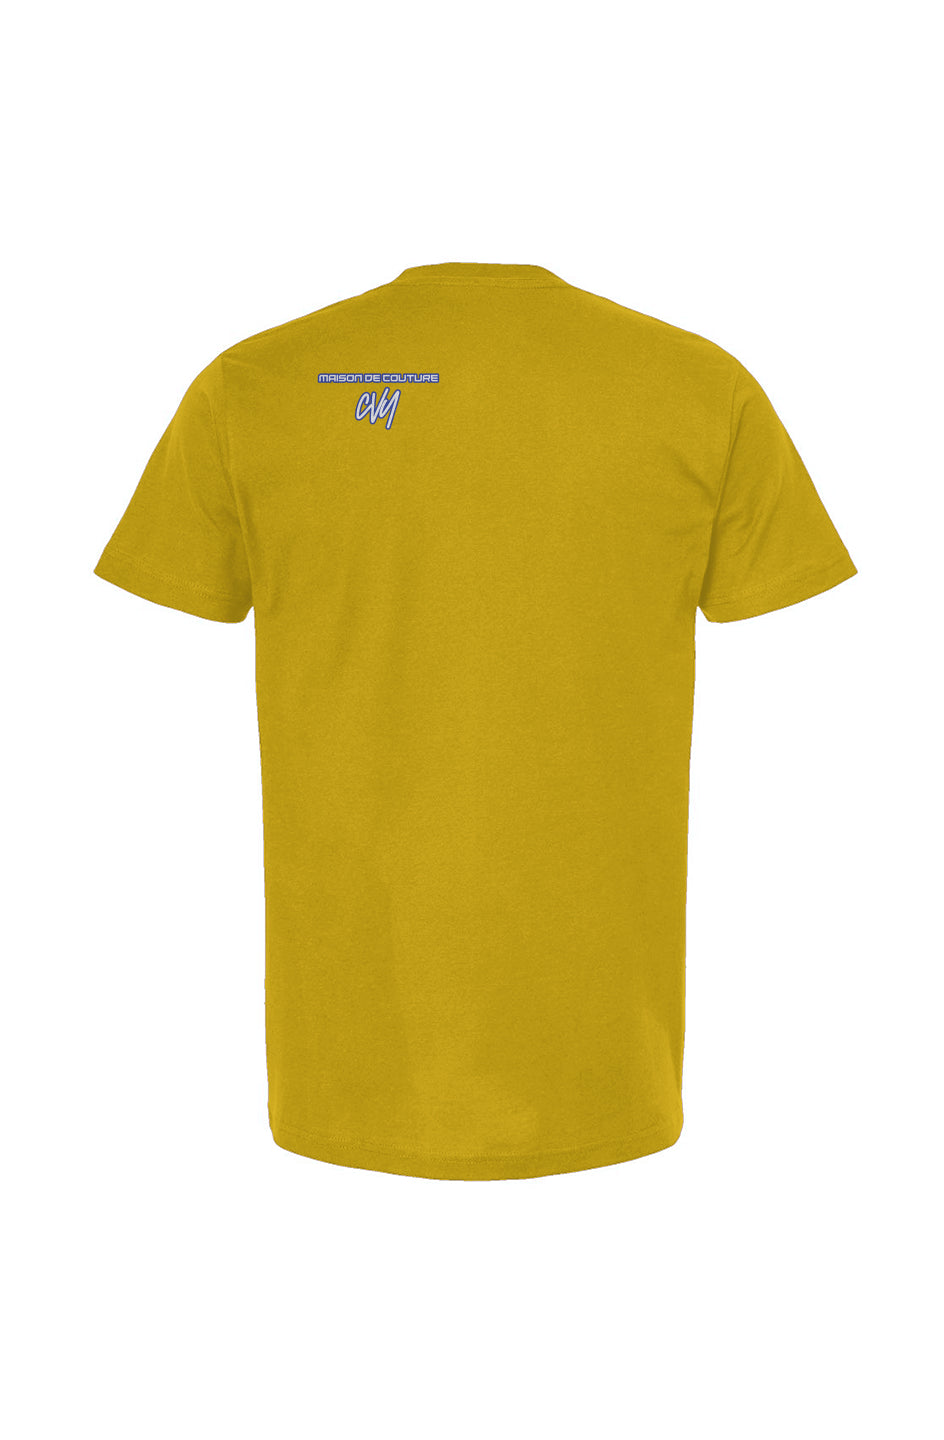 GS - Gold Unisex T Shirt